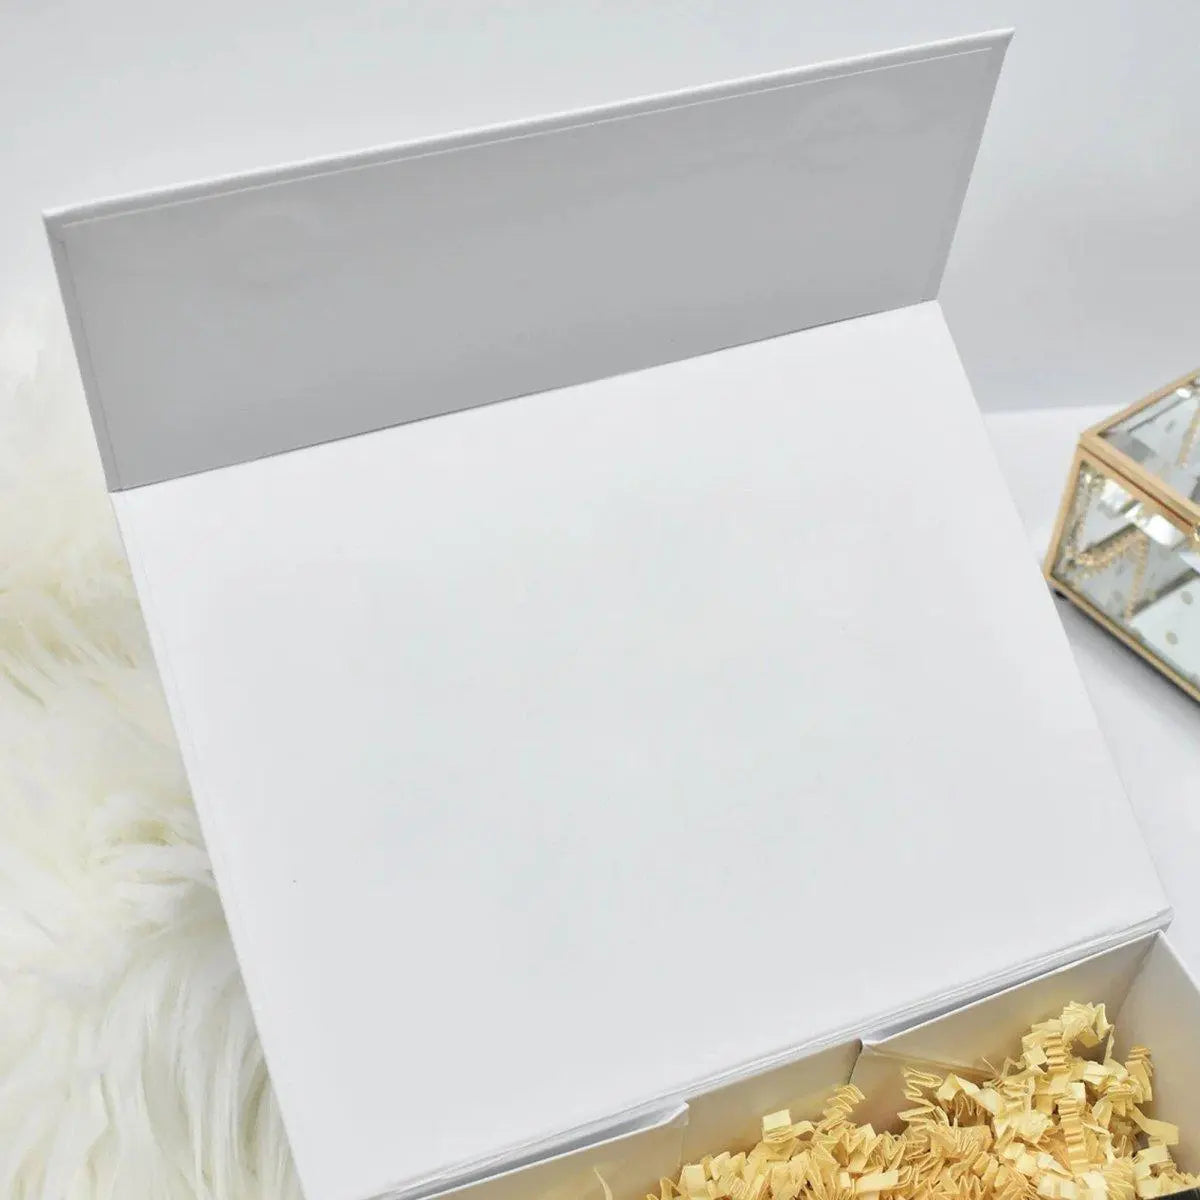 Personalised Bridesmaid Gift Box, Bridesmaid Proposal Gift Box, Maid of Honour Box, Printed Box, Thank You Bridesmaid Gift Box, Empty Box, - Amy Lucy